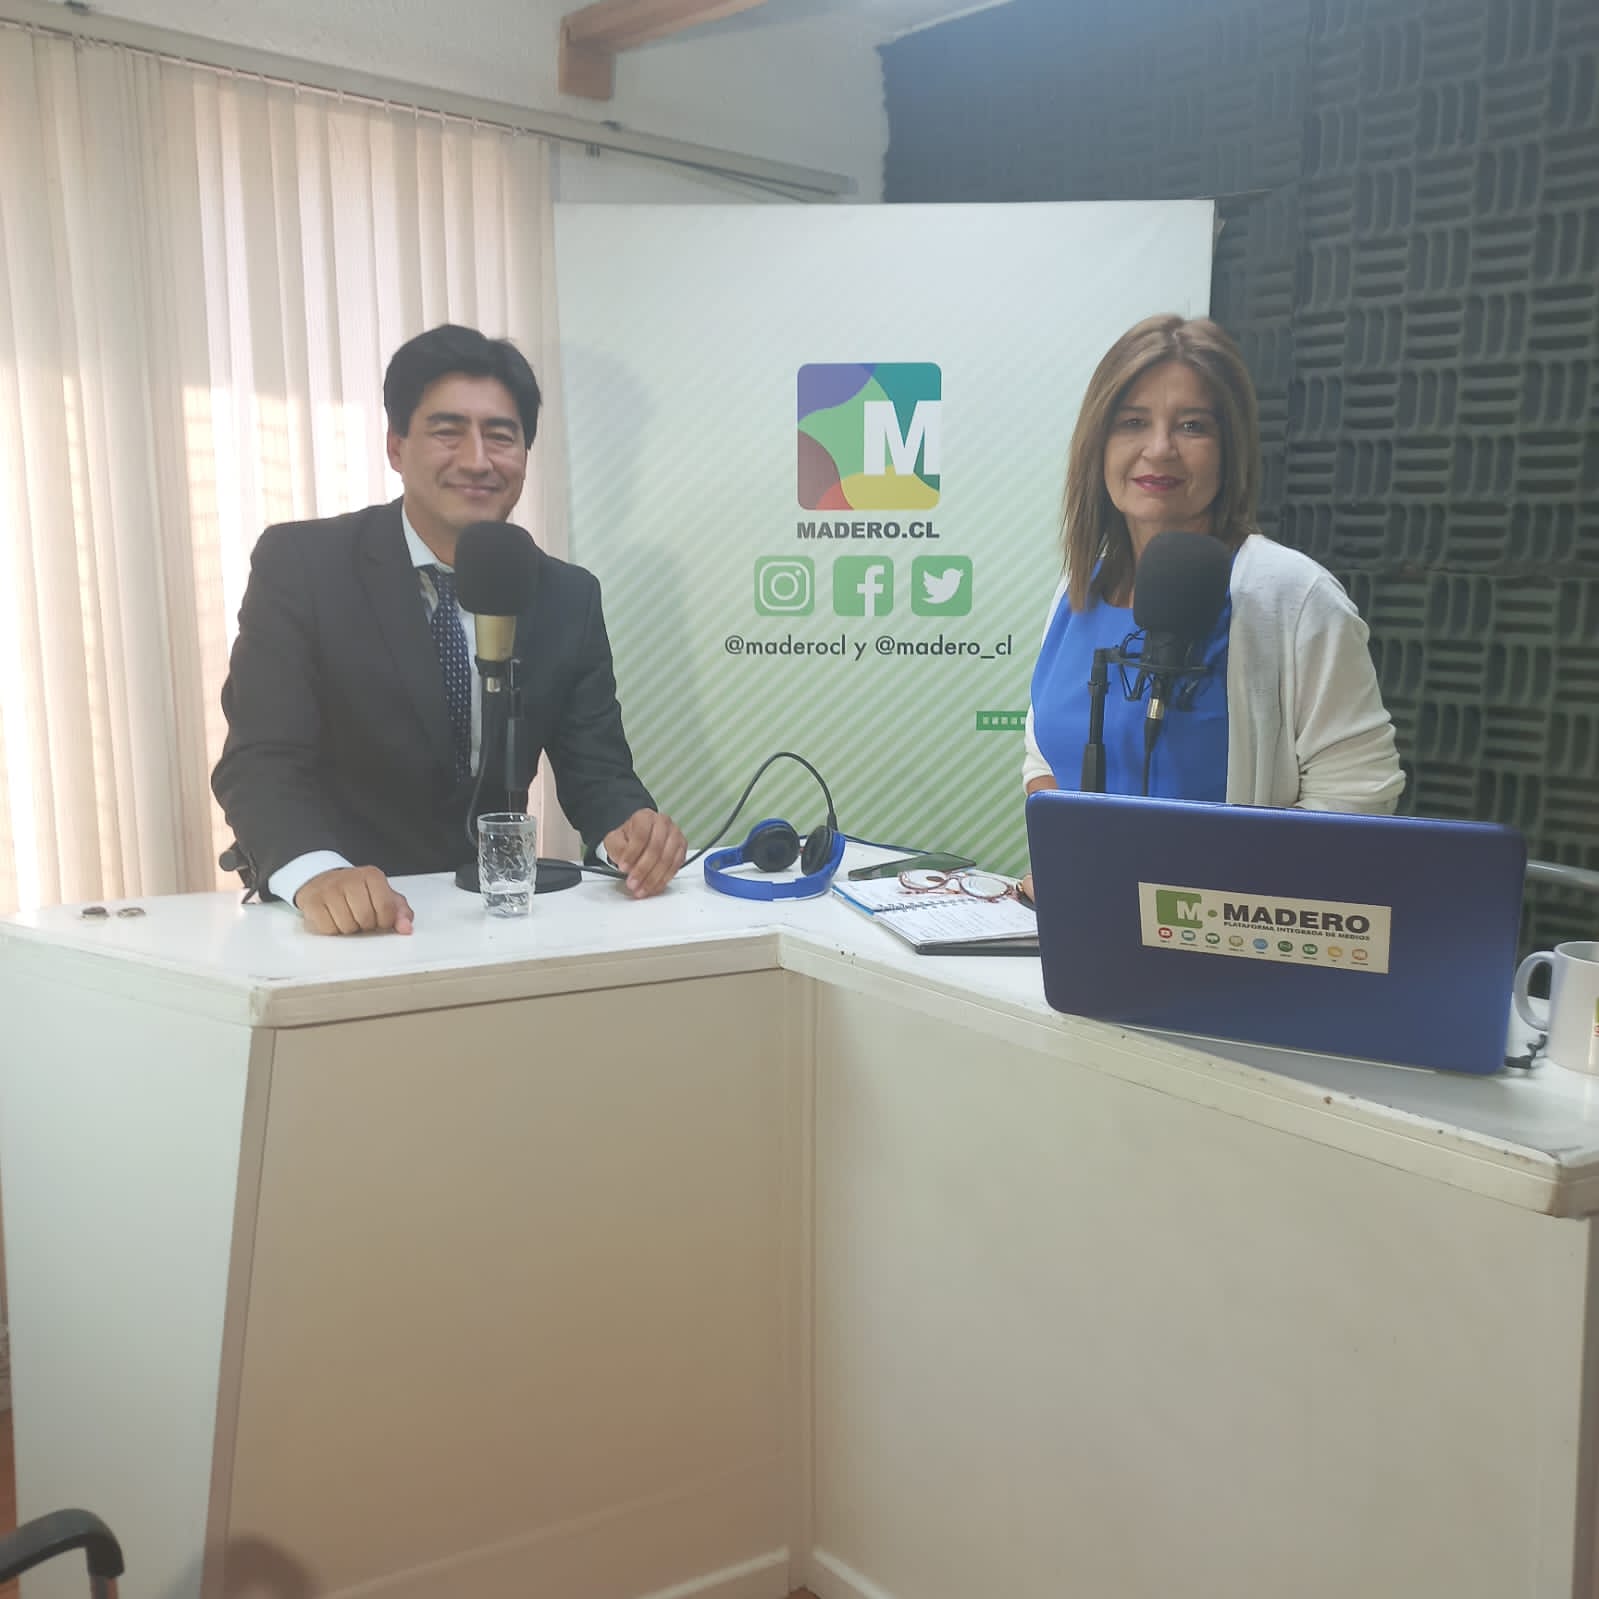 Abogado Jefe del Consultorio Jurídico Antofagasta Norte participó en Radio Madero